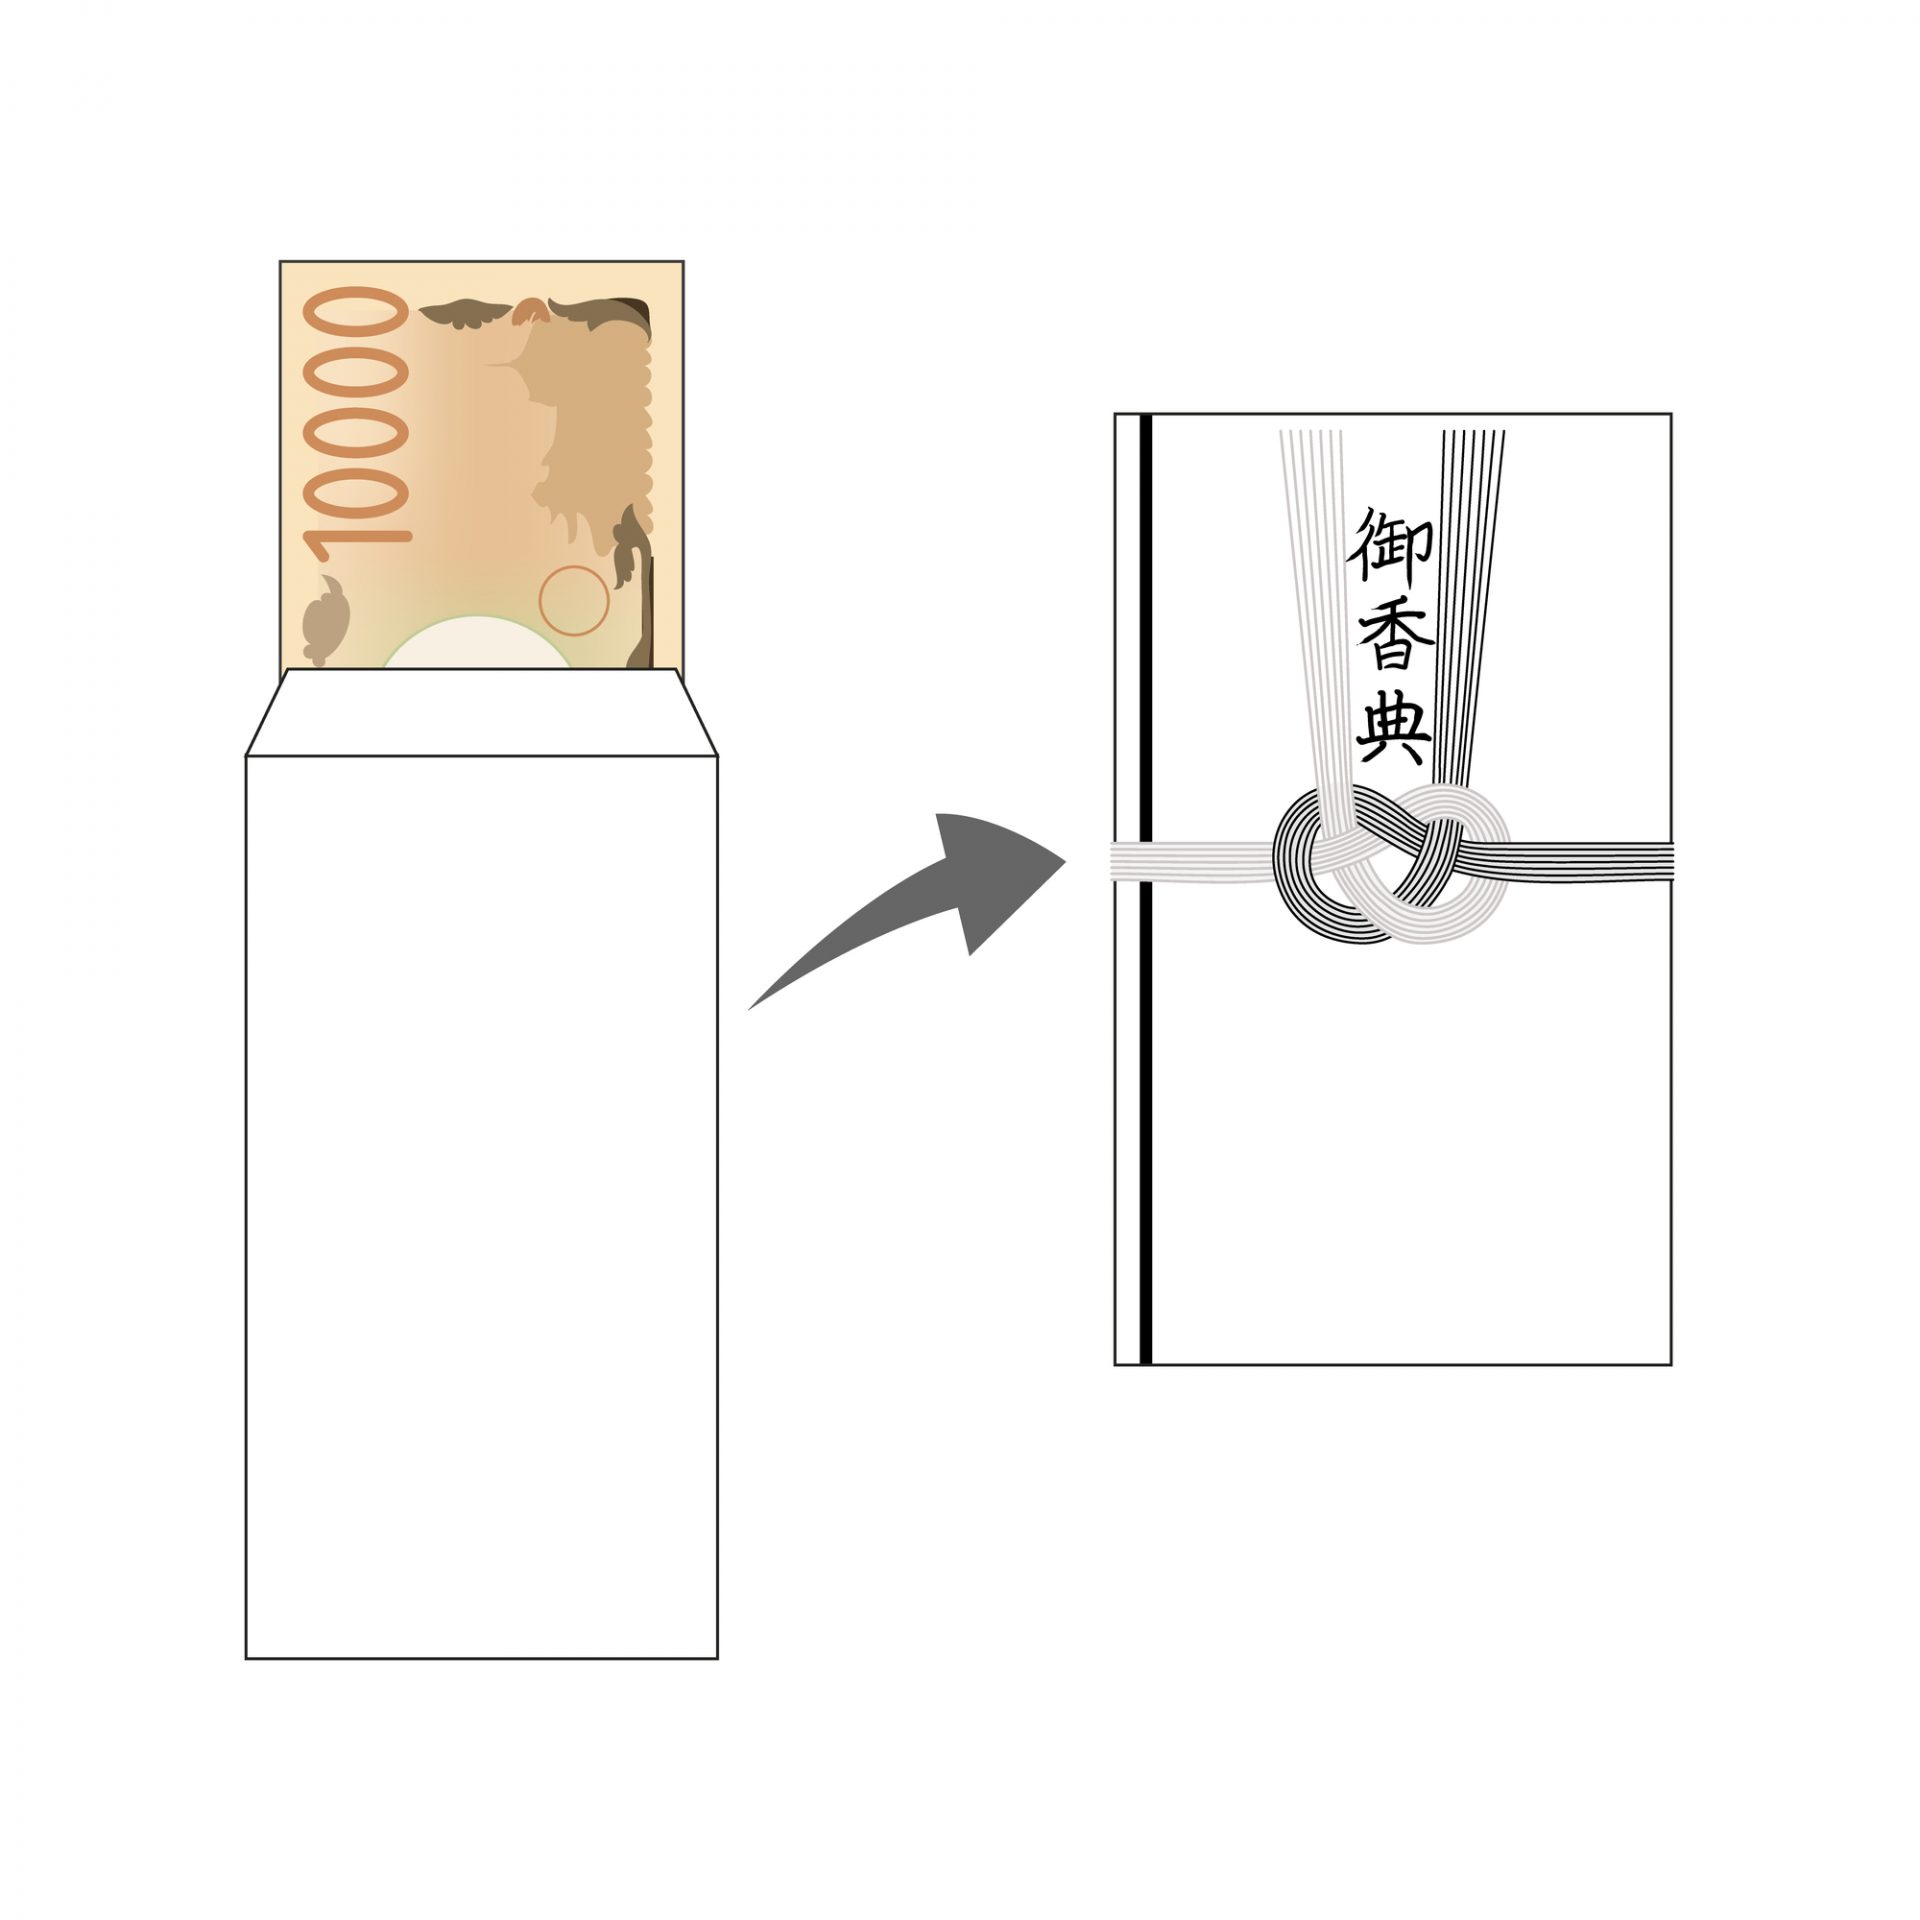 画像：中袋がある香典袋へのお金の入れ方の図解